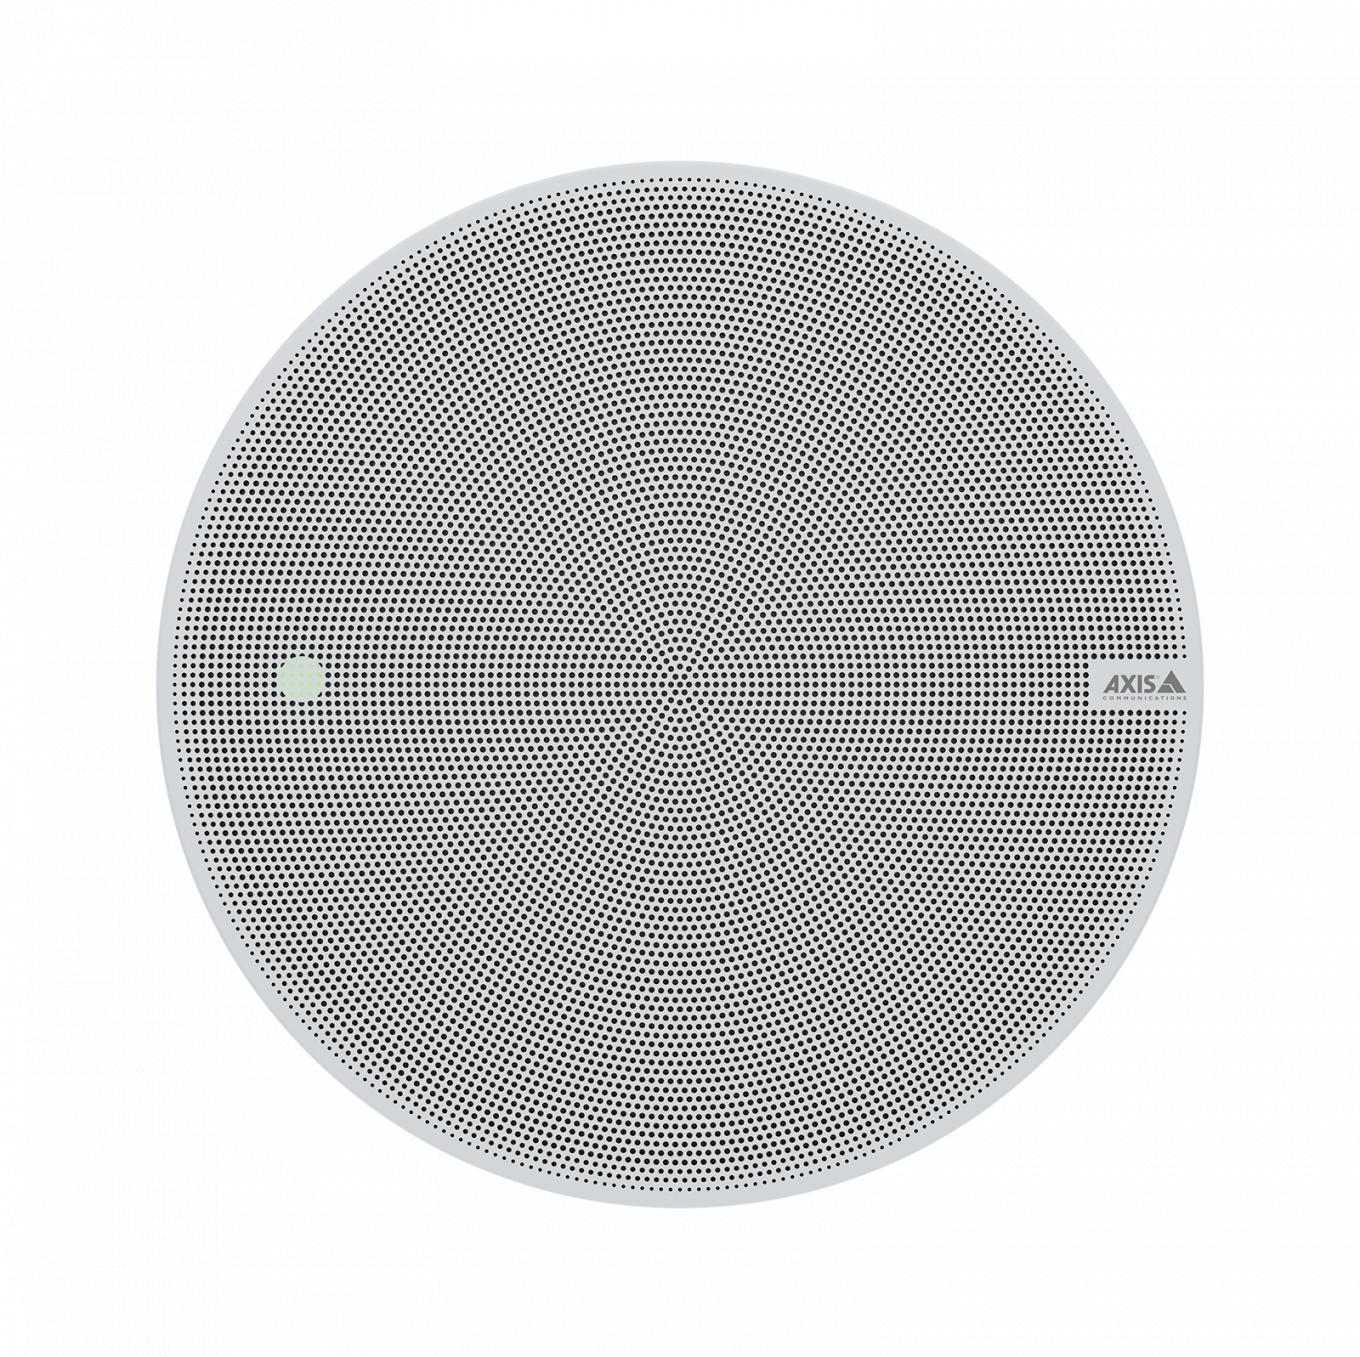 Altoparlante di rete AXIS C1211-E Network Ceiling Speaker grigio, dalla parte anteriore